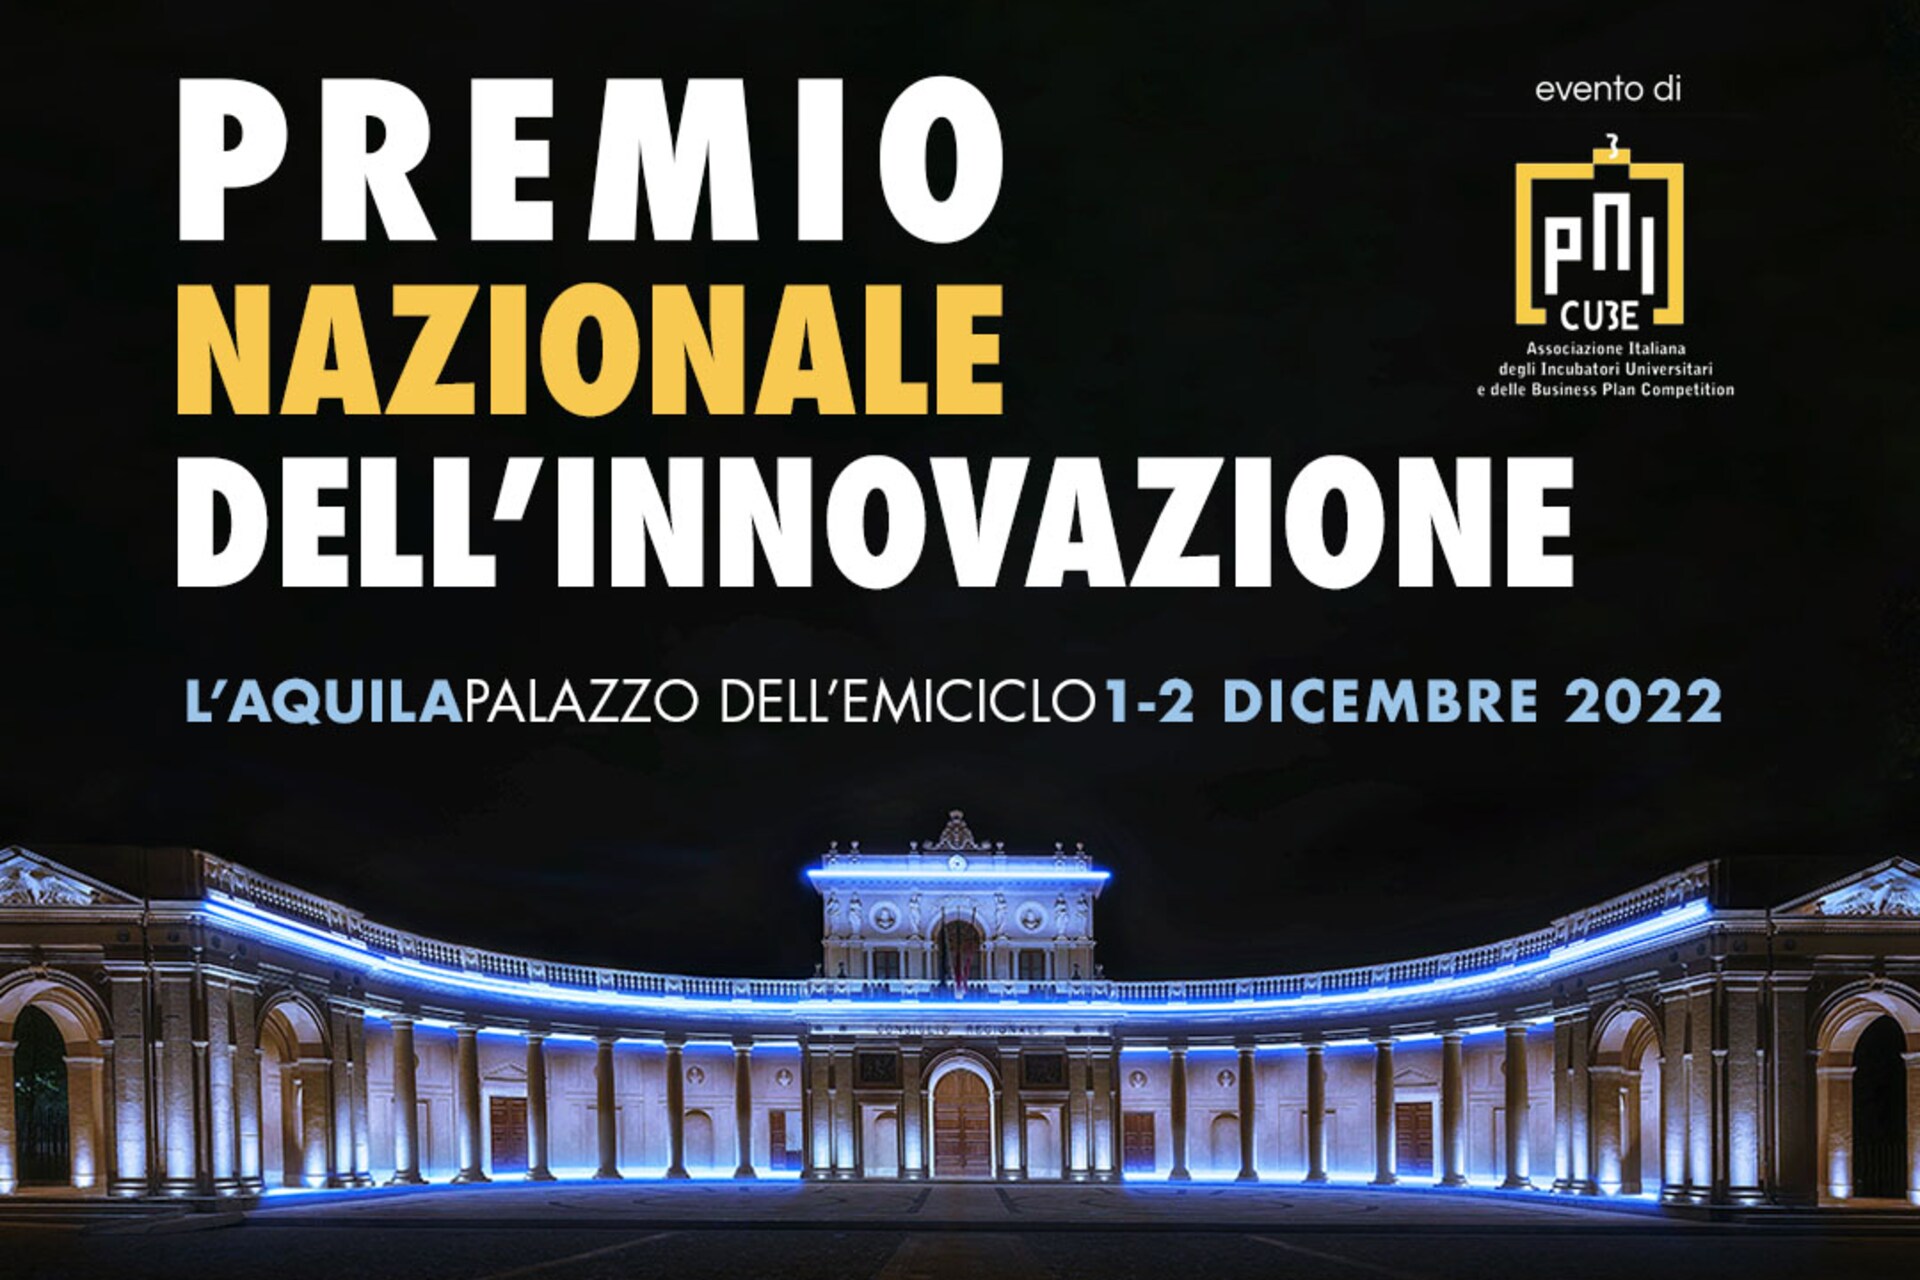 Nacionālā inovācijas balva: galvenais vizuālais materiāls 2022. gada Nacionālās inovācijas balvas izdevumam Itālijā